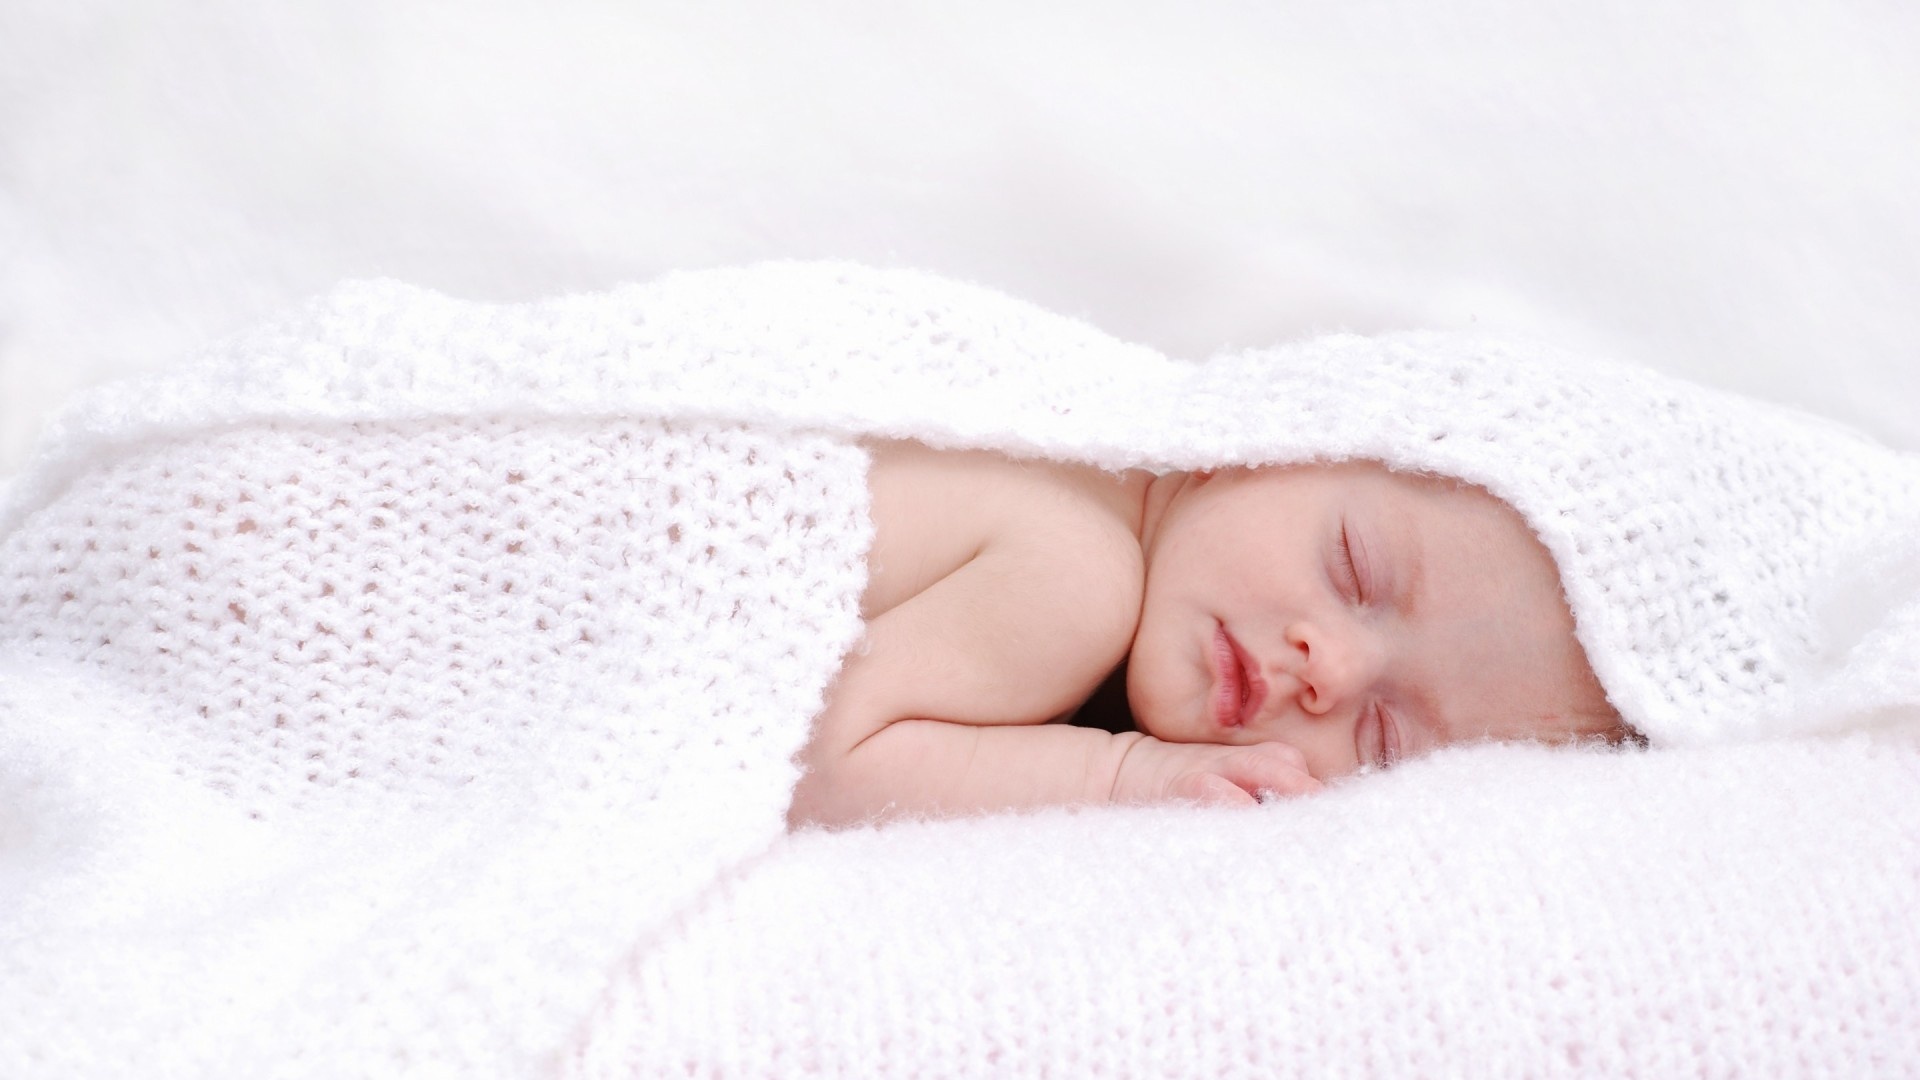 Sweet Sleeping Baby - Sleeping Child , HD Wallpaper & Backgrounds